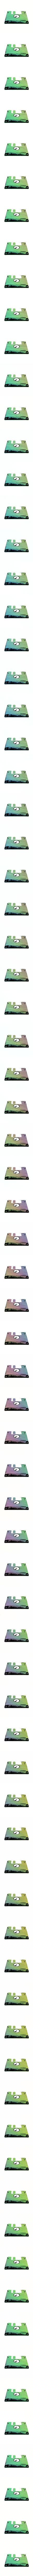 Dirty Floppy Disk